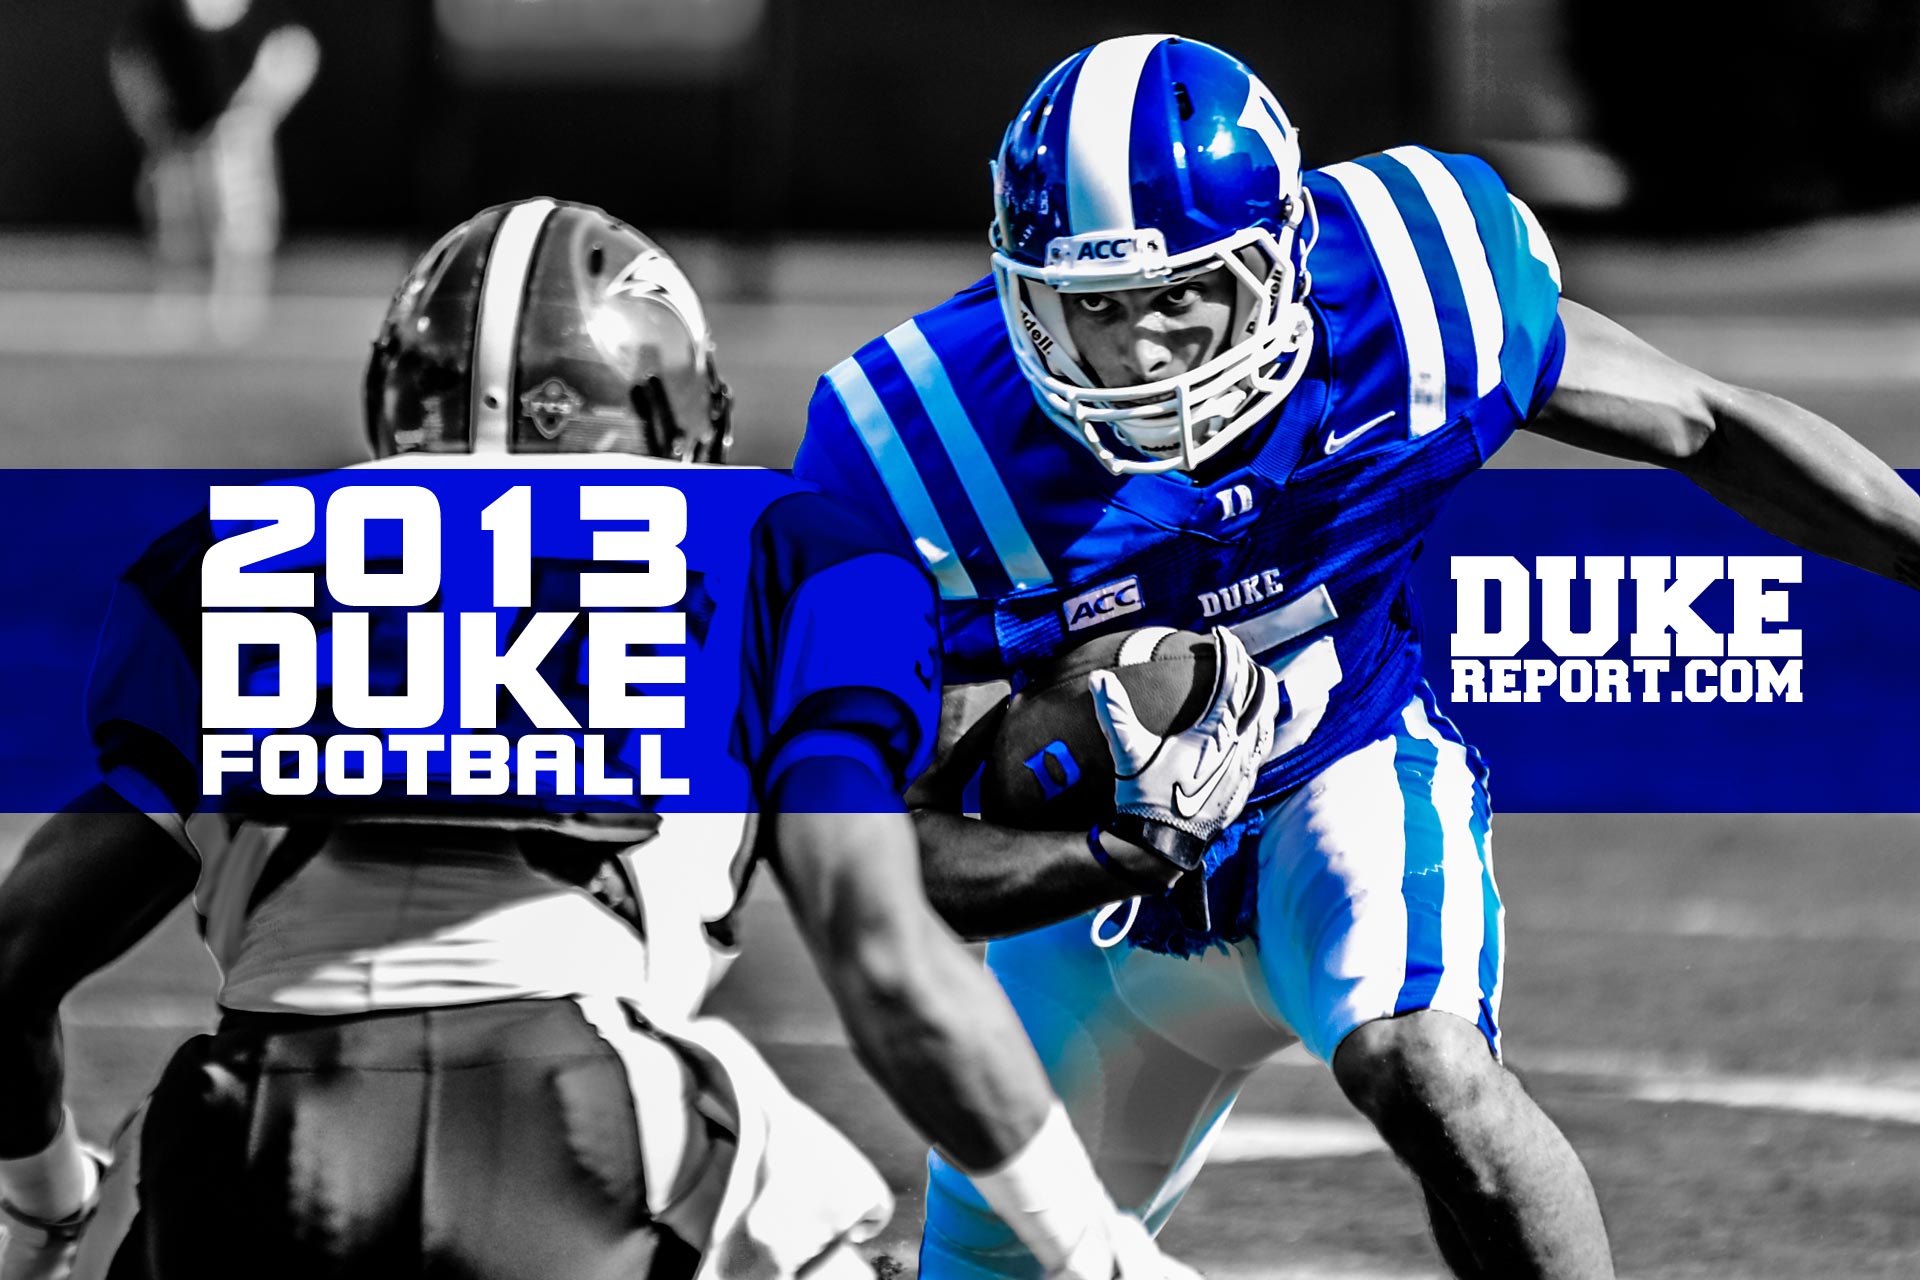 Duke Wallpaper For iPhone Football